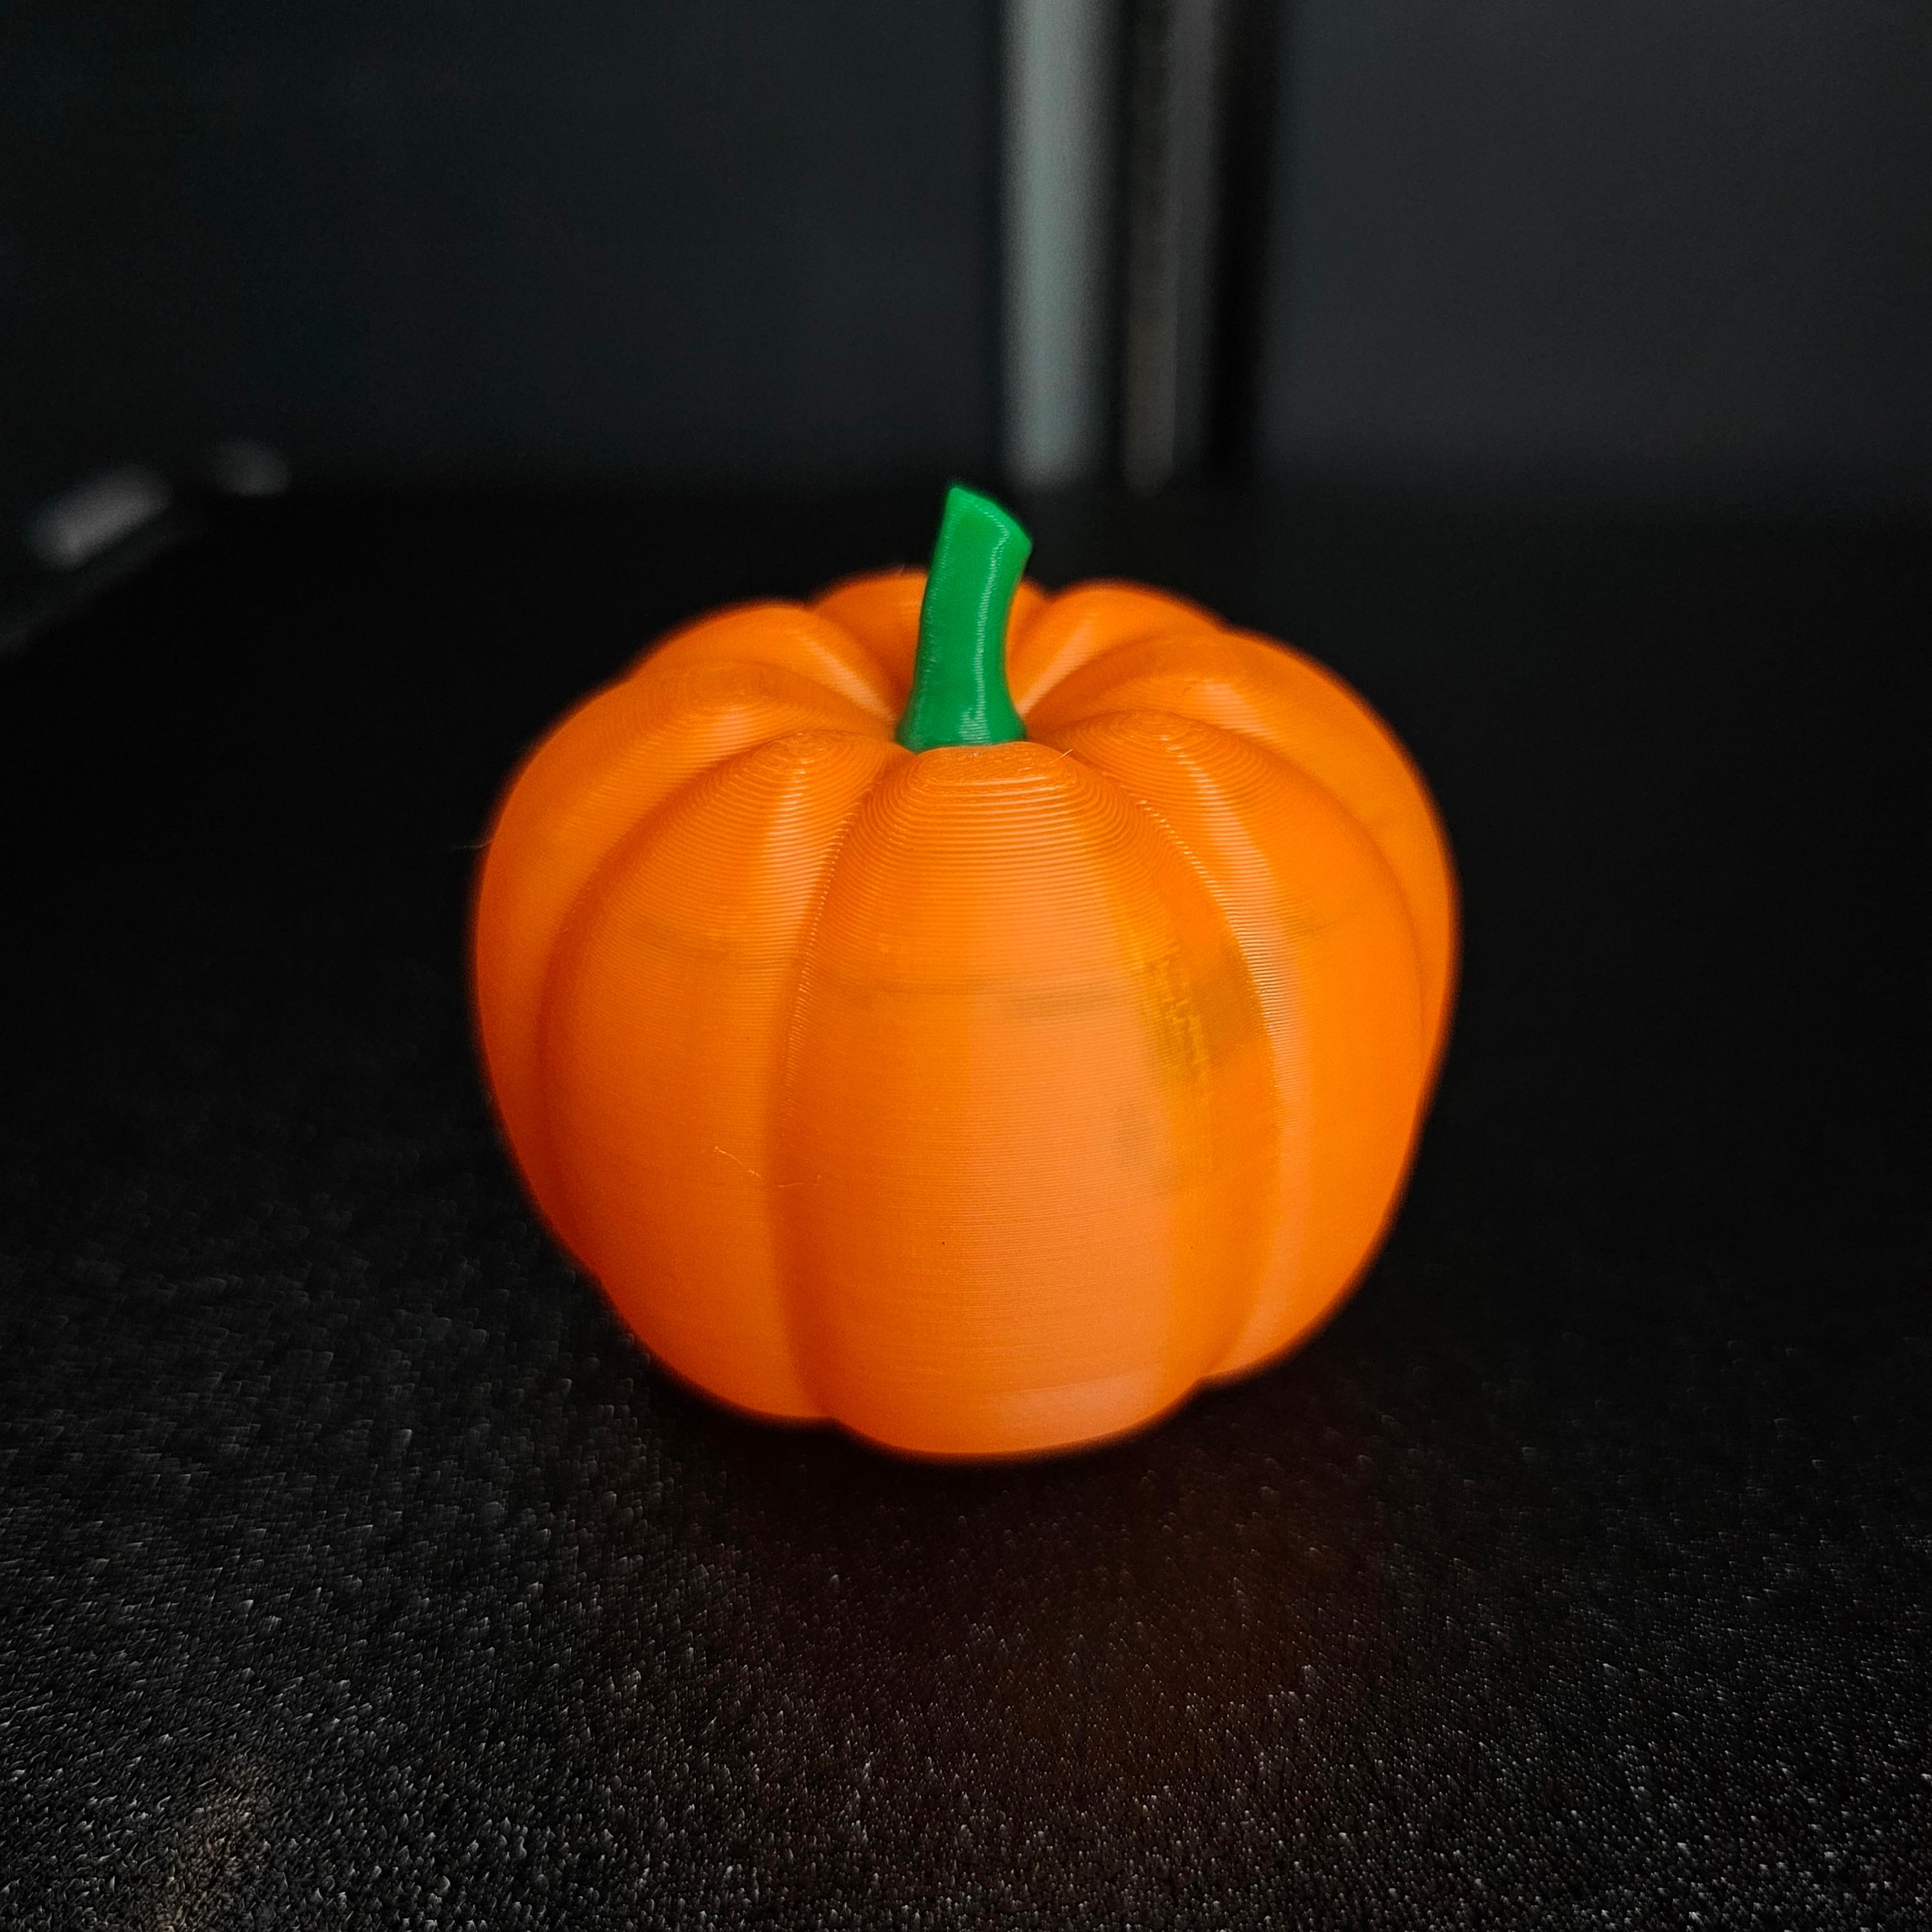 Pumpkin 3d model